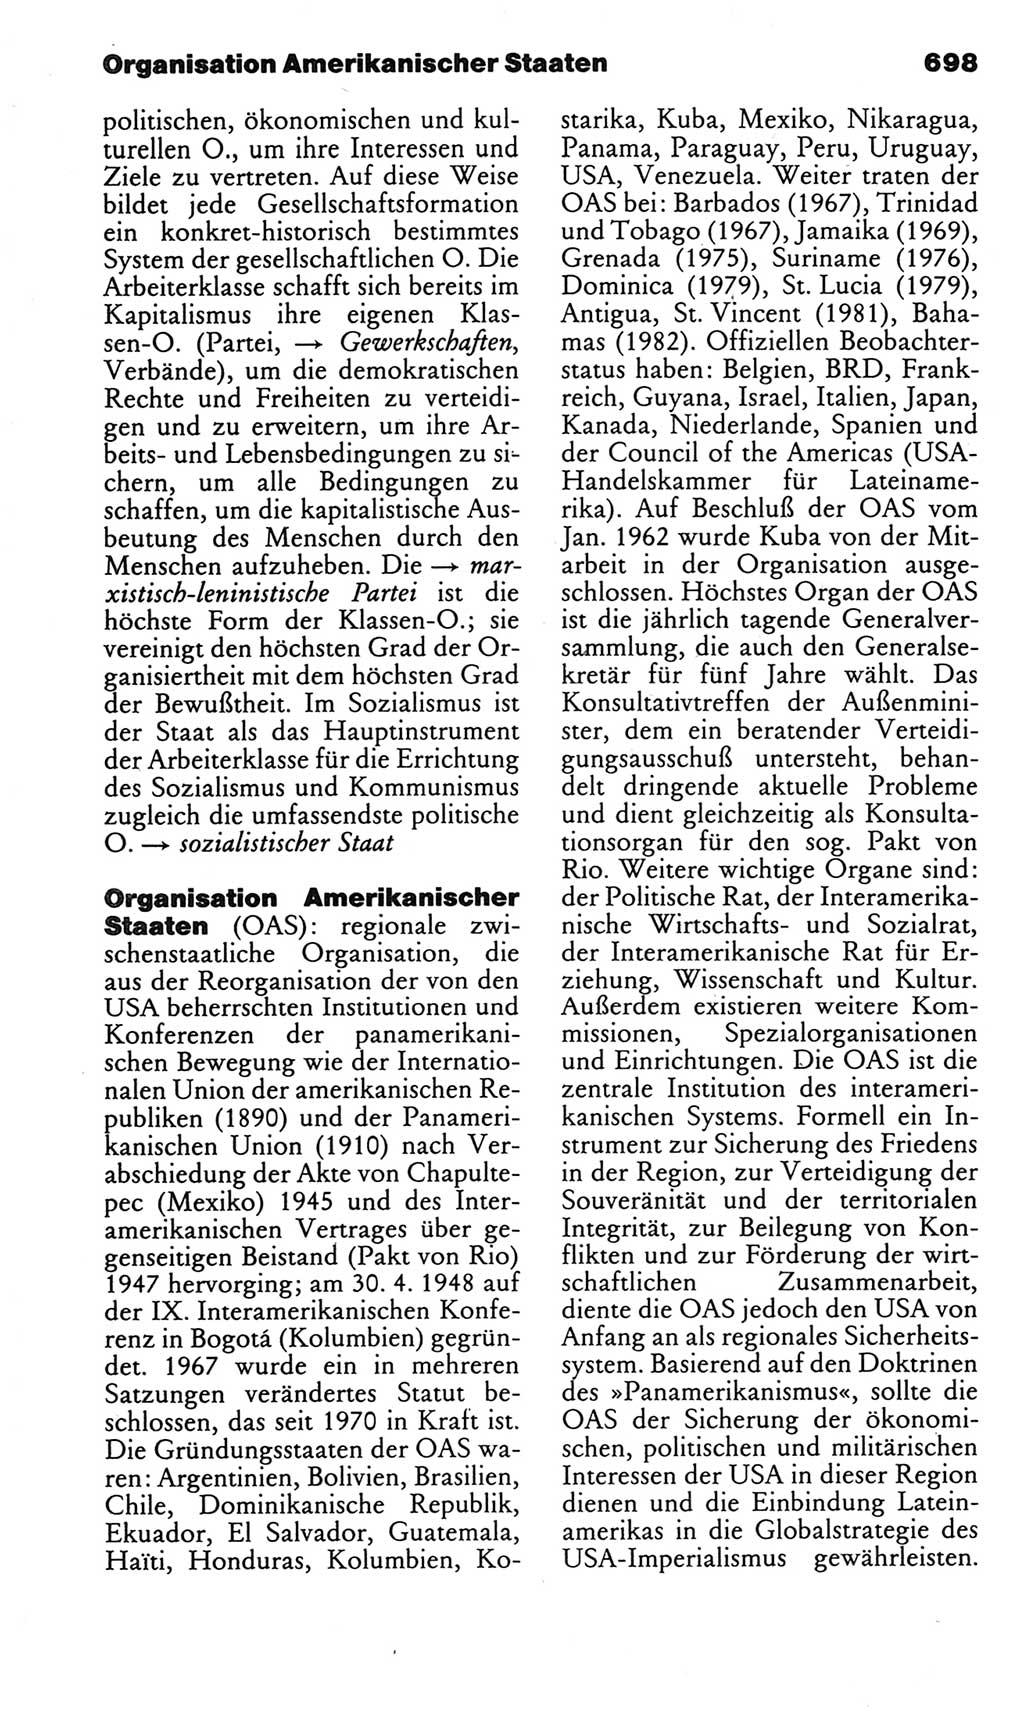 Kleines politisches Wörterbuch [Deutsche Demokratische Republik (DDR)] 1983, Seite 698 (Kl. pol. Wb. DDR 1983, S. 698)